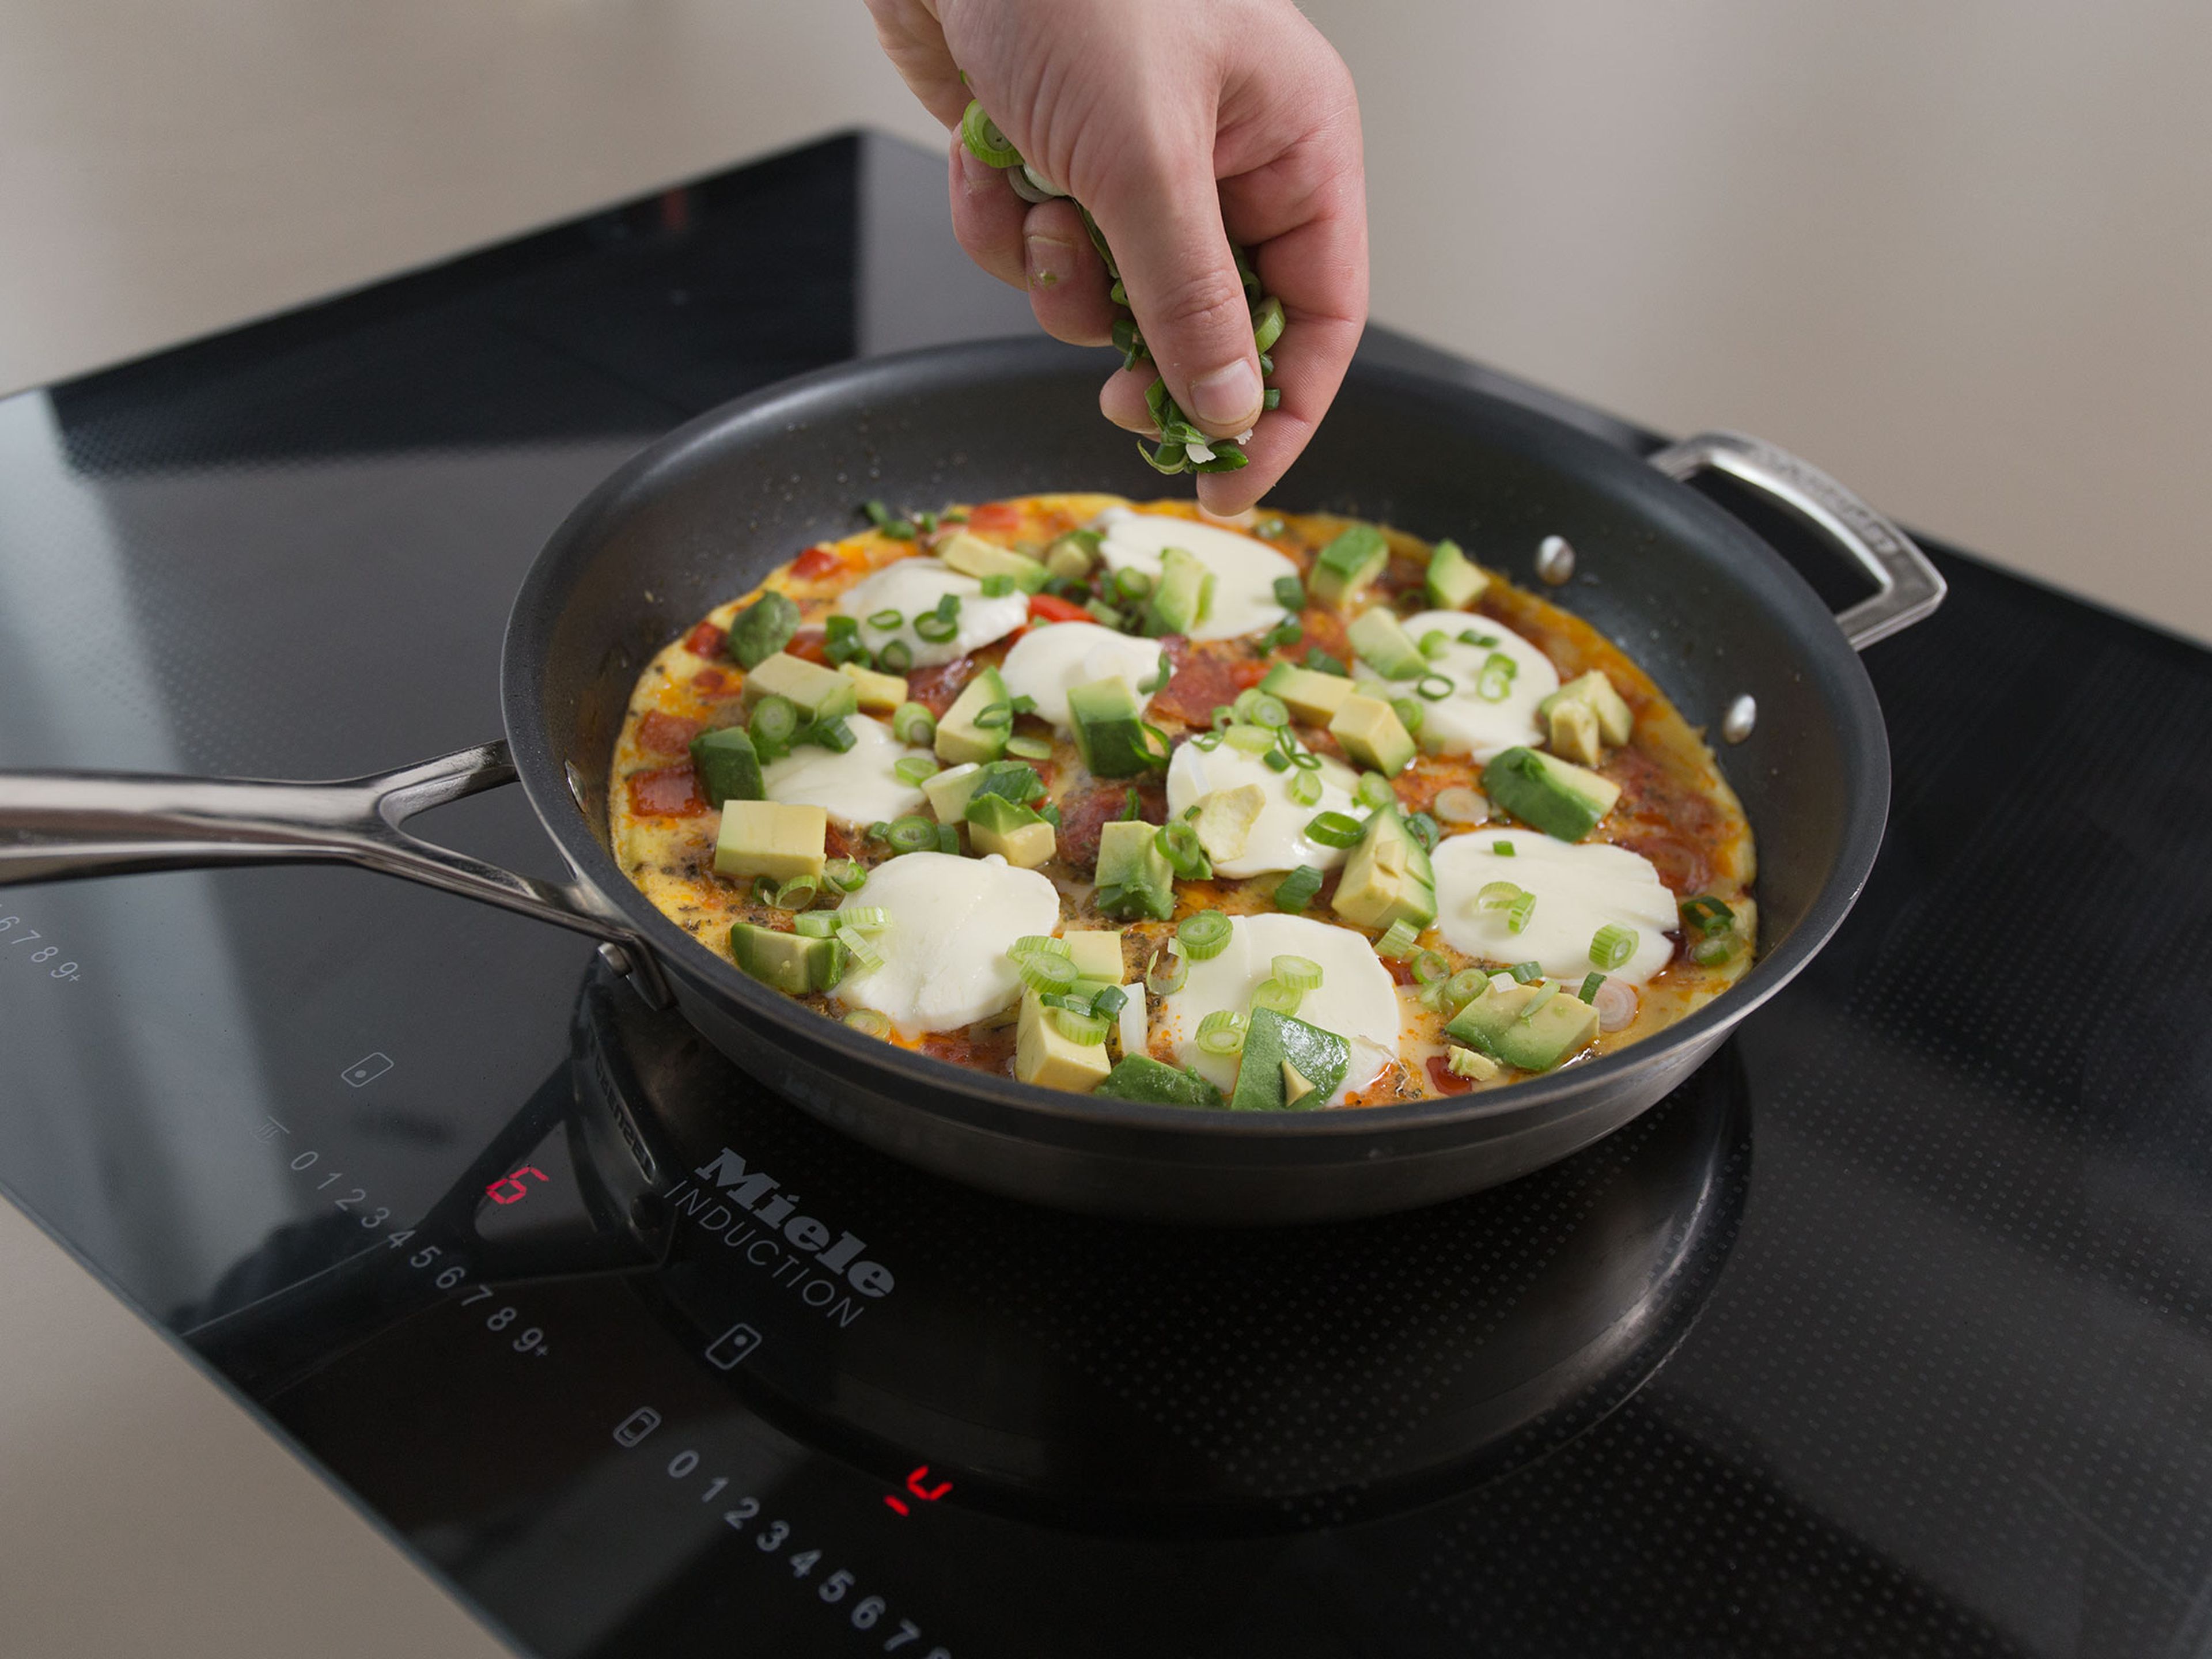 Sobald das Omelett zur Hälfte gestockt ist Avocado, Mozzarella und Frühlingszwiebeln darüber streuen. Deckel darauf setzen und ca. 2 Min. weiterkochen lassen. Mit restlicher Petersilie bestreuen. Guten Appetit!